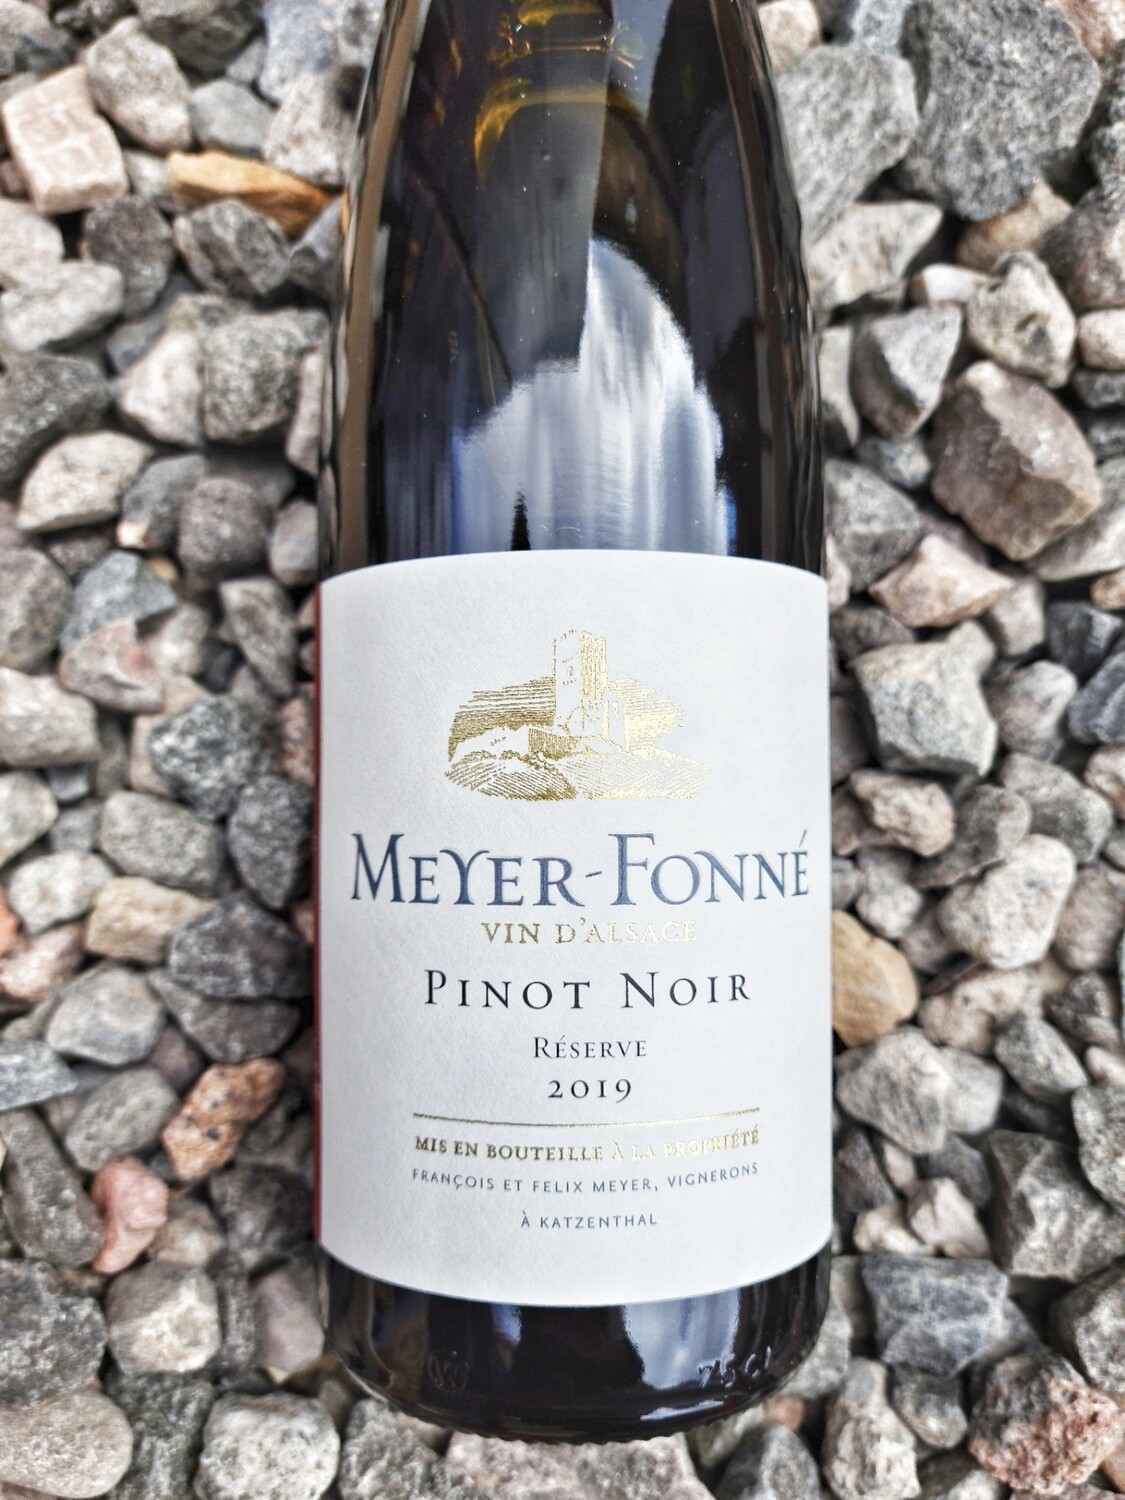 Meyer Fonne Pinot Noir Reserve 2019